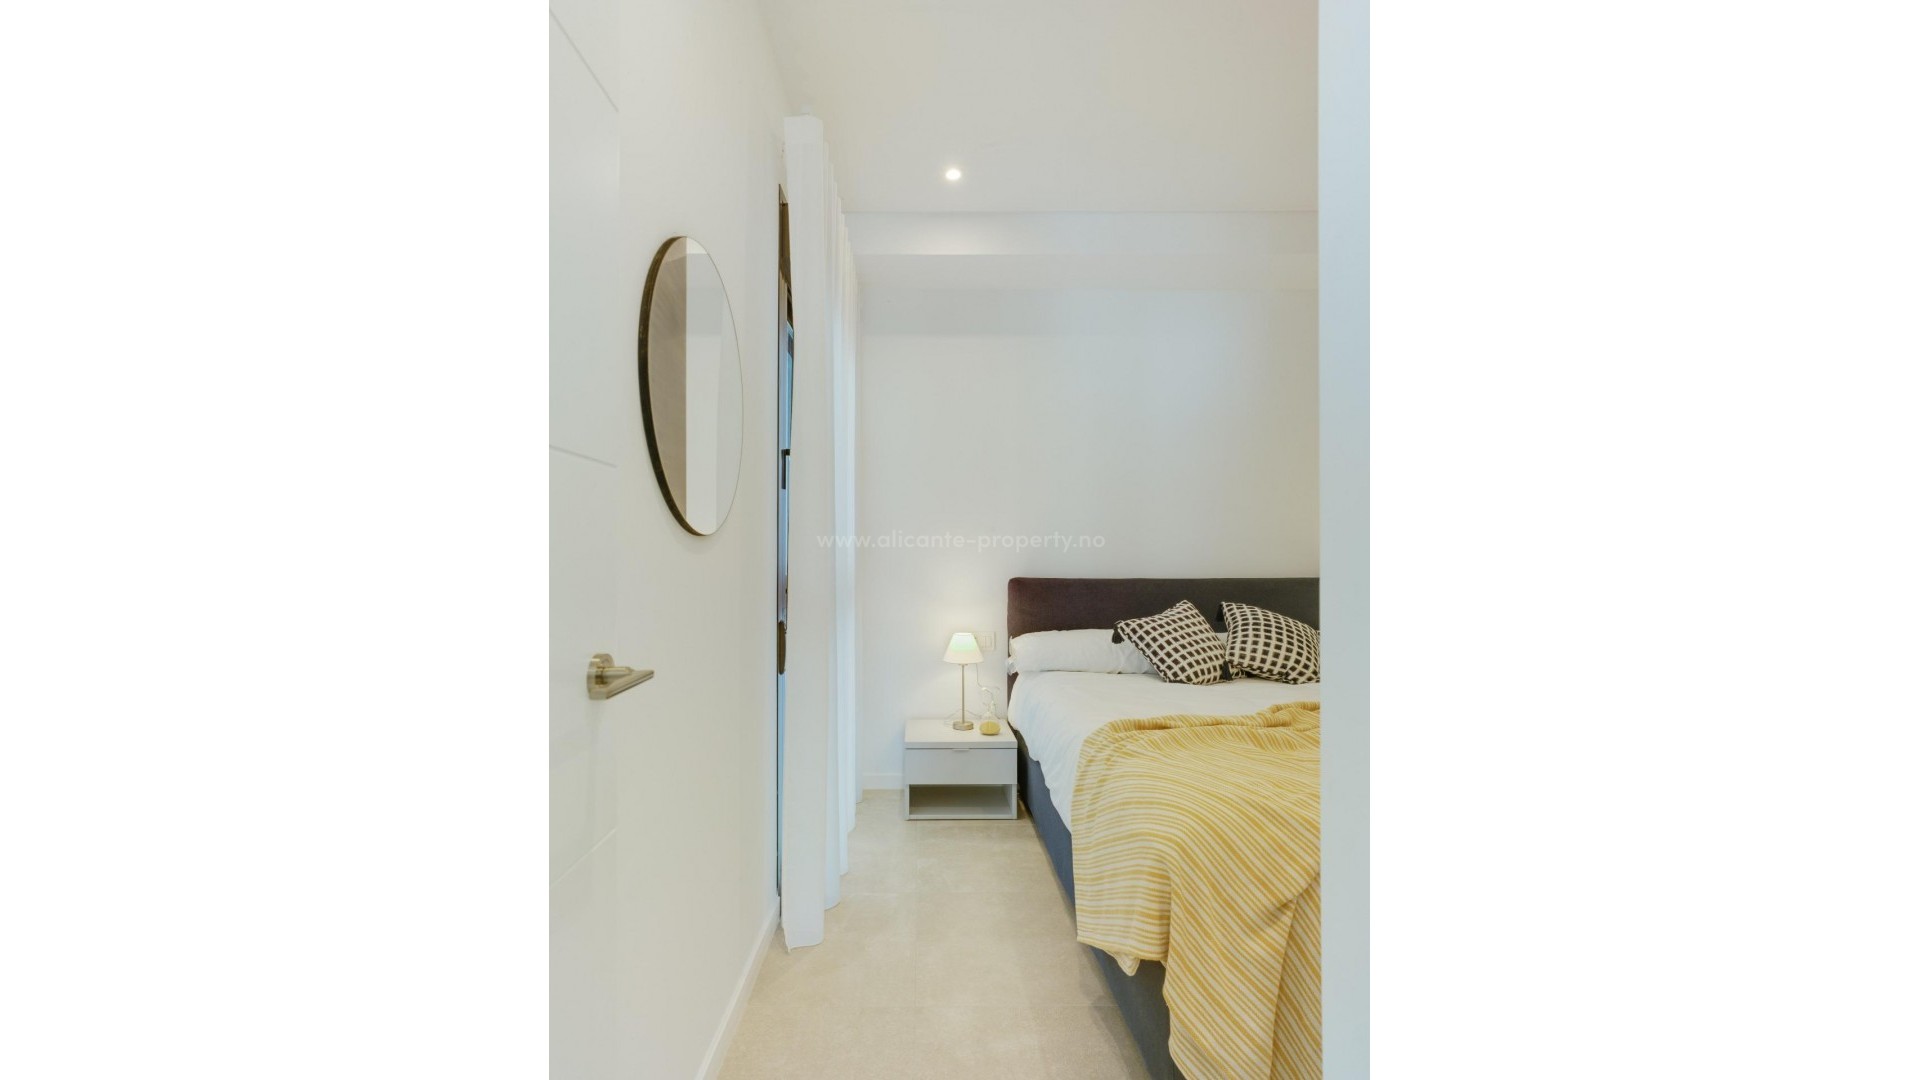 Apartments and bungalows in Pilar de La Horadada. Alicante, 2/3 bedrooms, 2 bathrooms, Bathrooms with underfloor heating. Installation of air conditioning, pool terrace